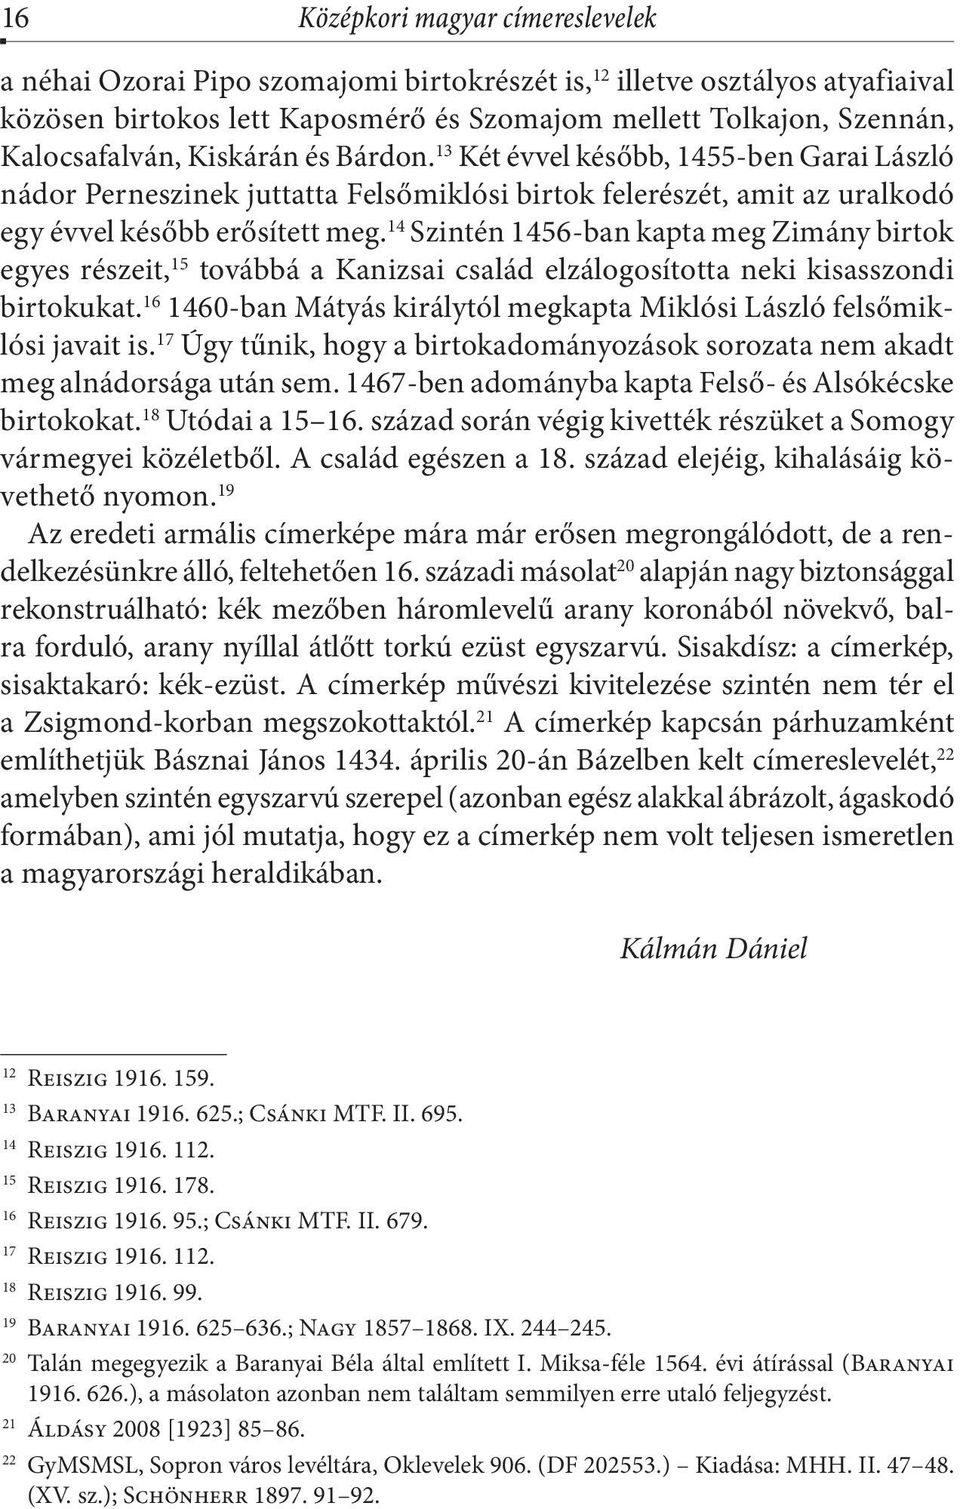 14 Szintén 1456-ban kapta meg Zimány birtok egyes részeit, 15 továbbá a Kanizsai család elzálogosította neki kisasszondi birtokukat.